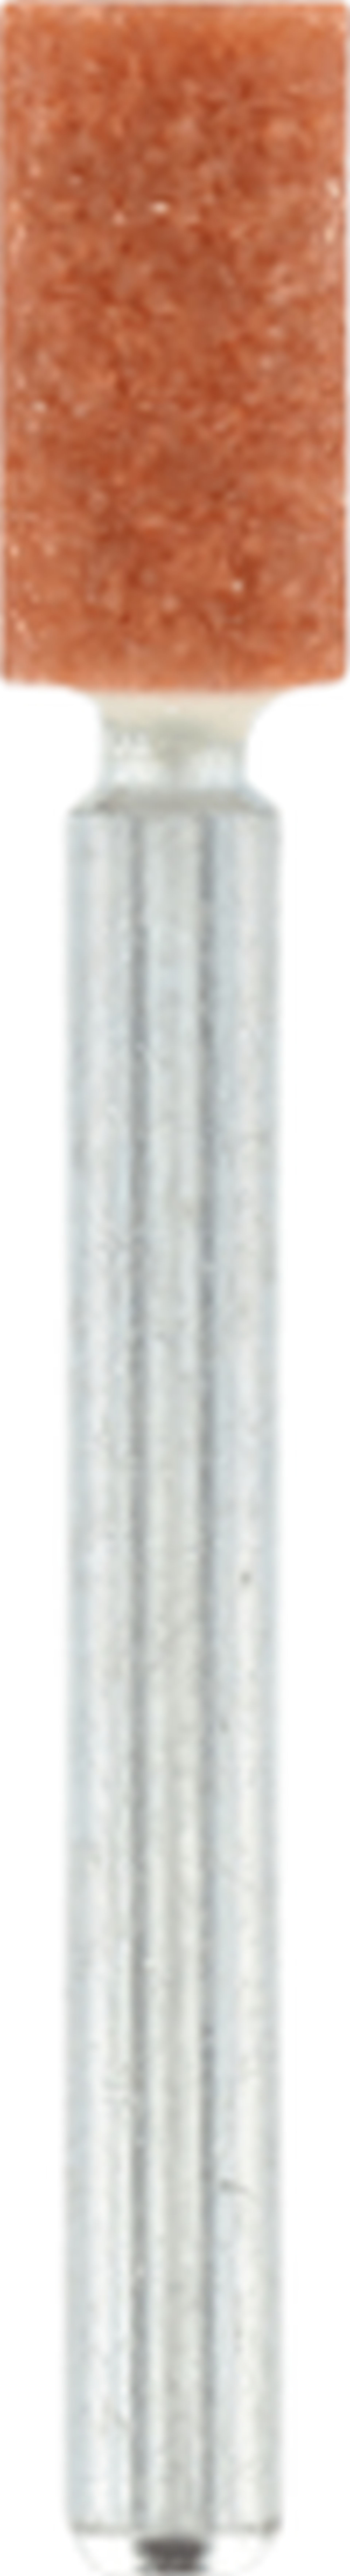 DREMEL Brusné tělísko z oxidu hliníku 4,8 mm 26158153JA